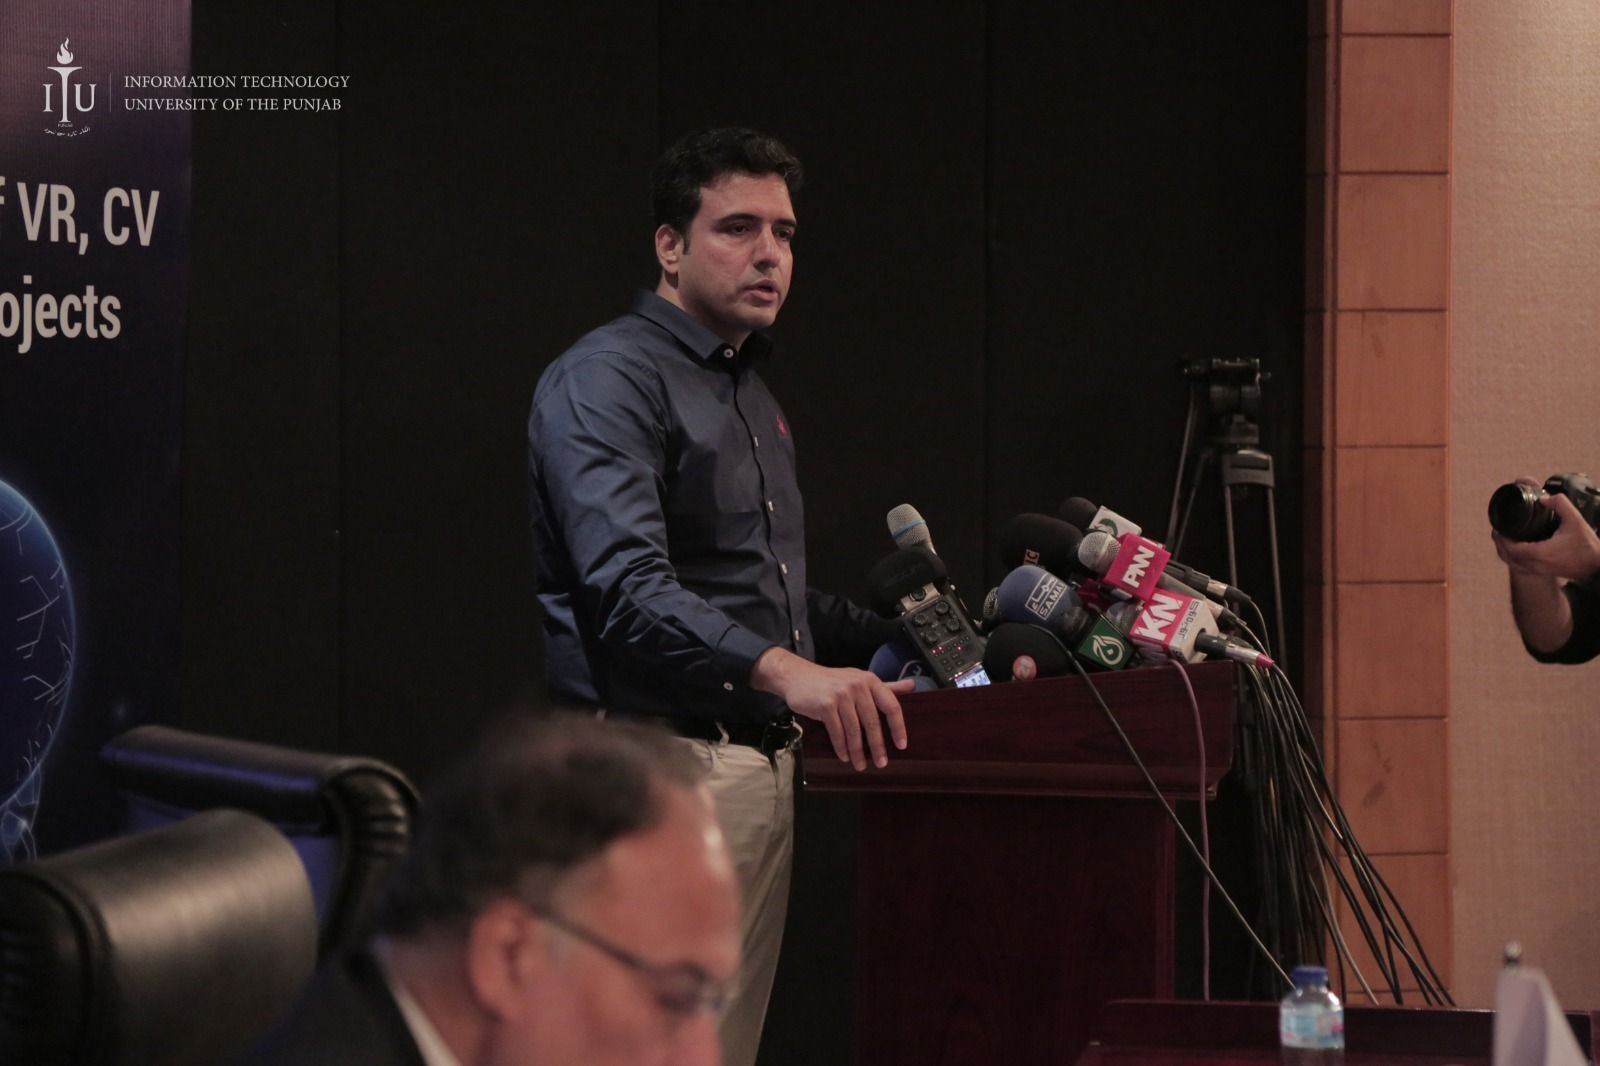 Dr. Faisal Kamiran at a press conference,